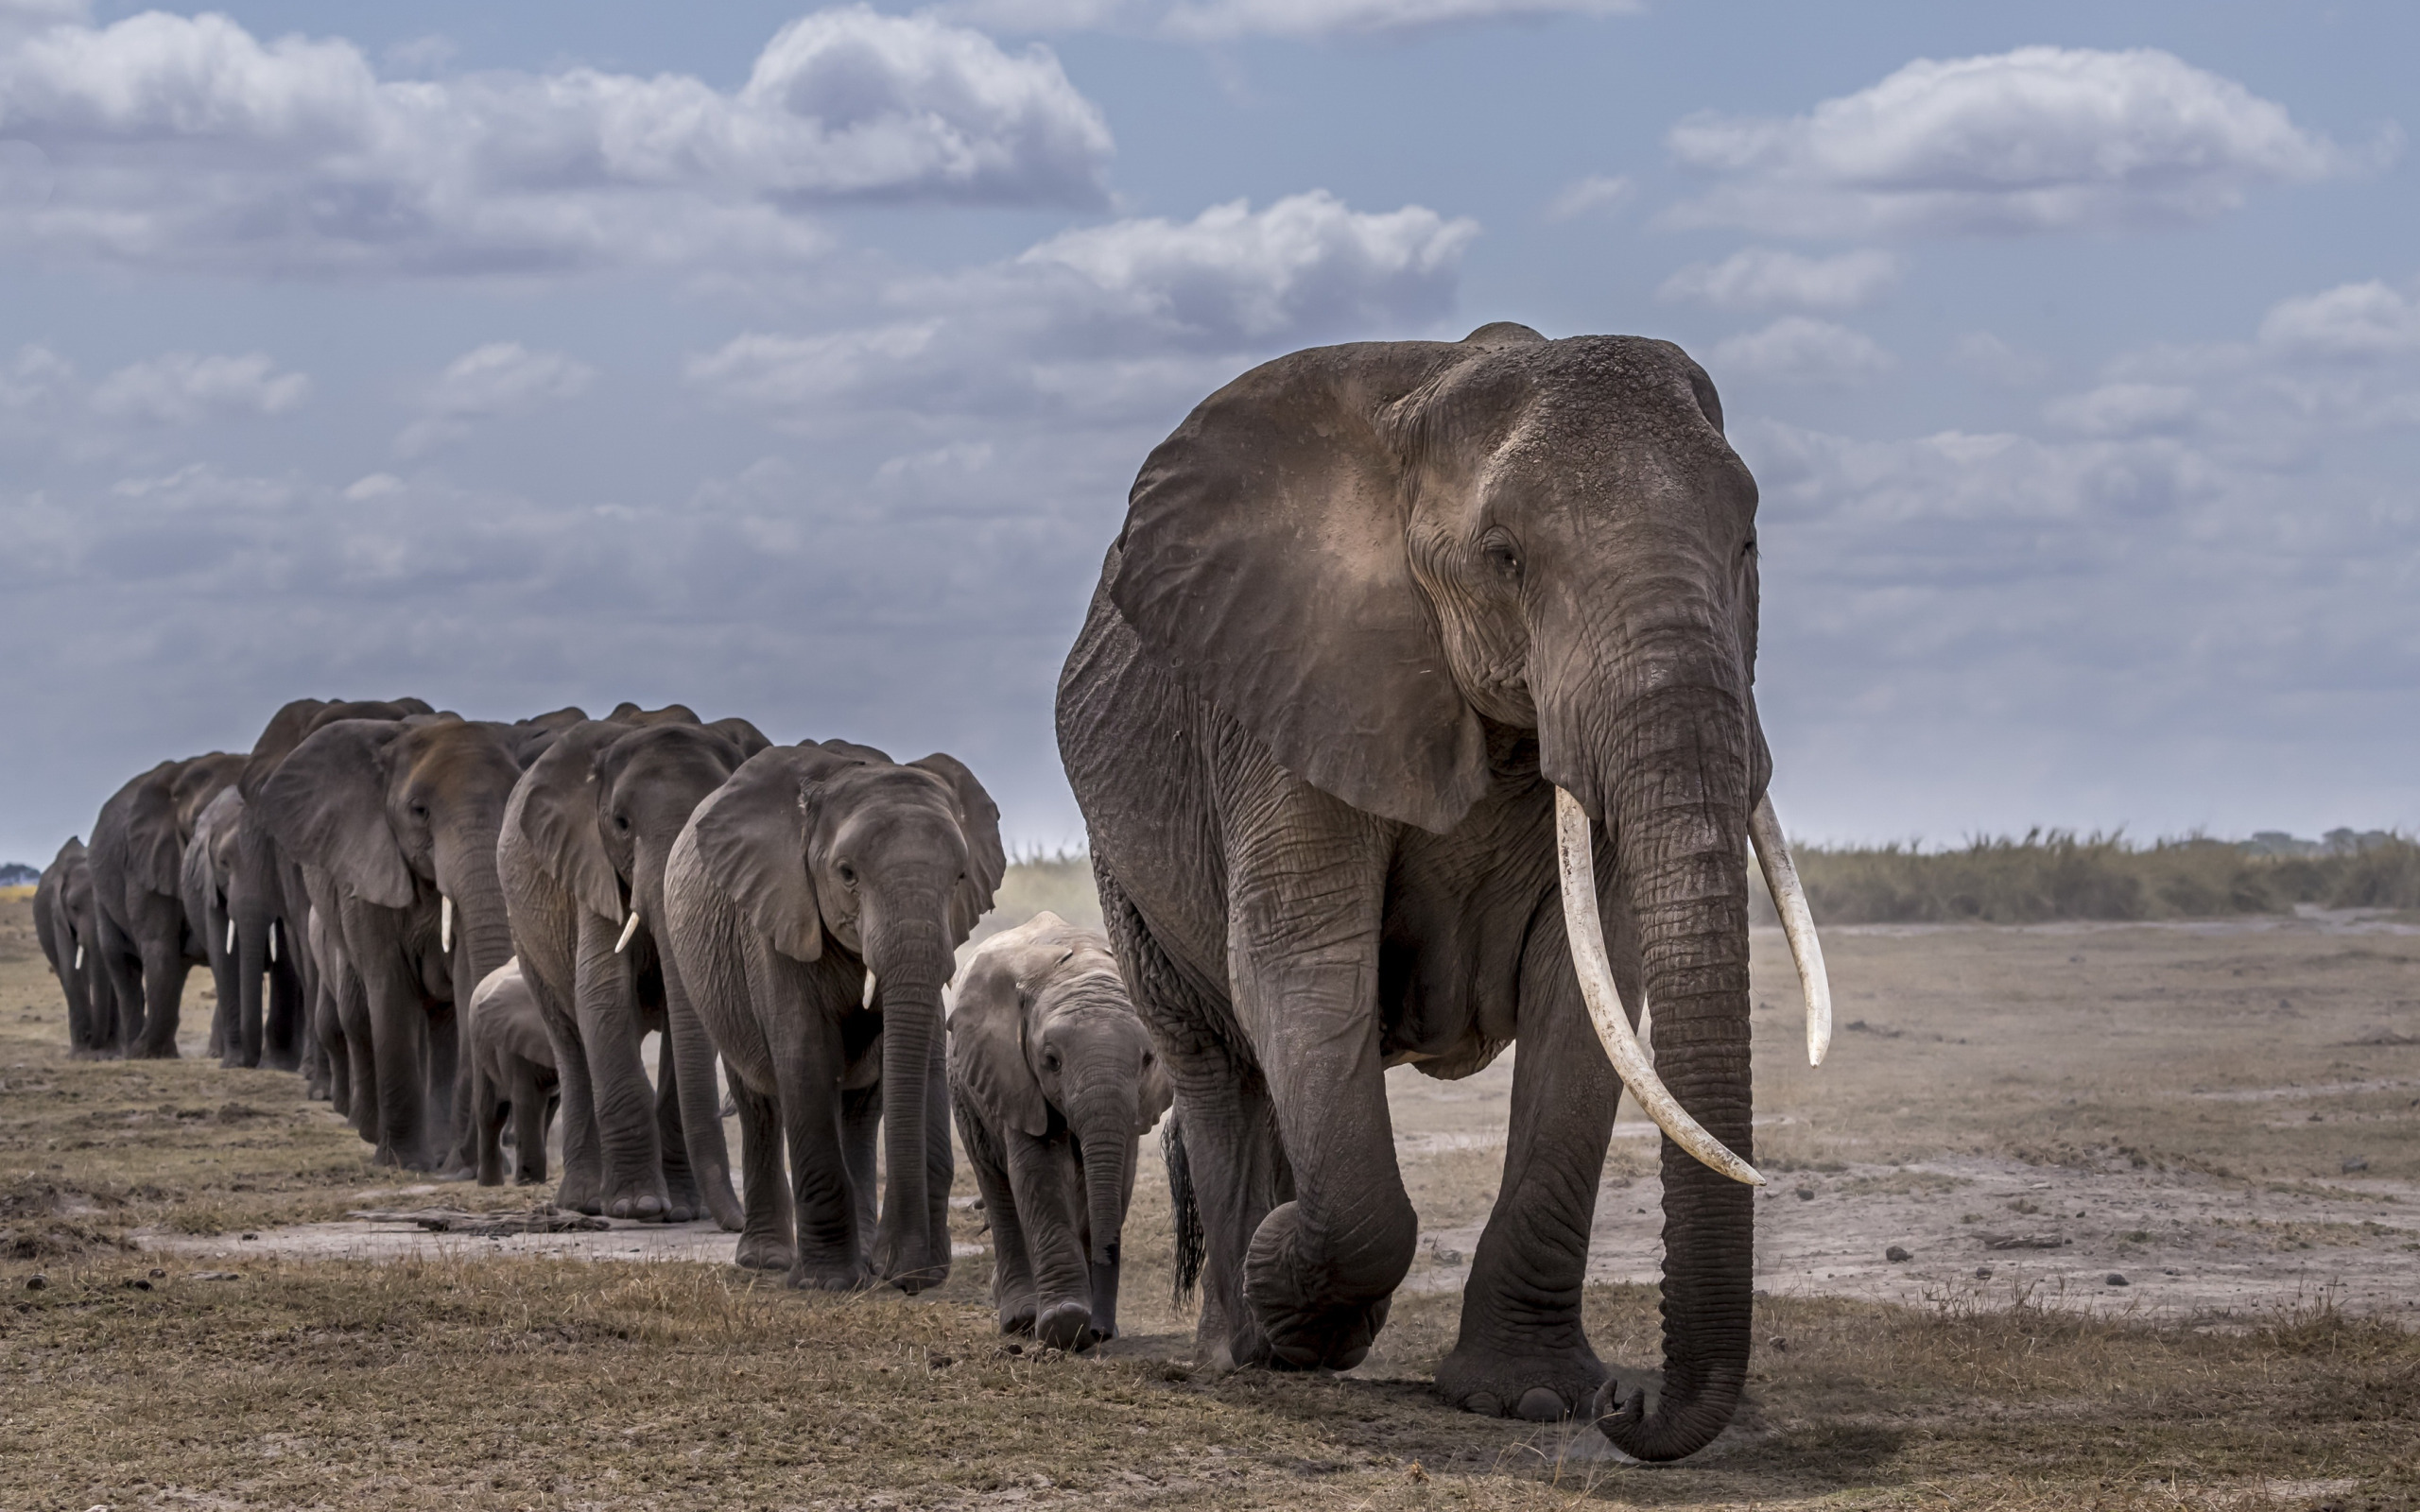 Elephant множественное. Африканский саванский слон. Африканский слон слон. Mammuthus sungari. Саванный слон рекорд Гиннесса.